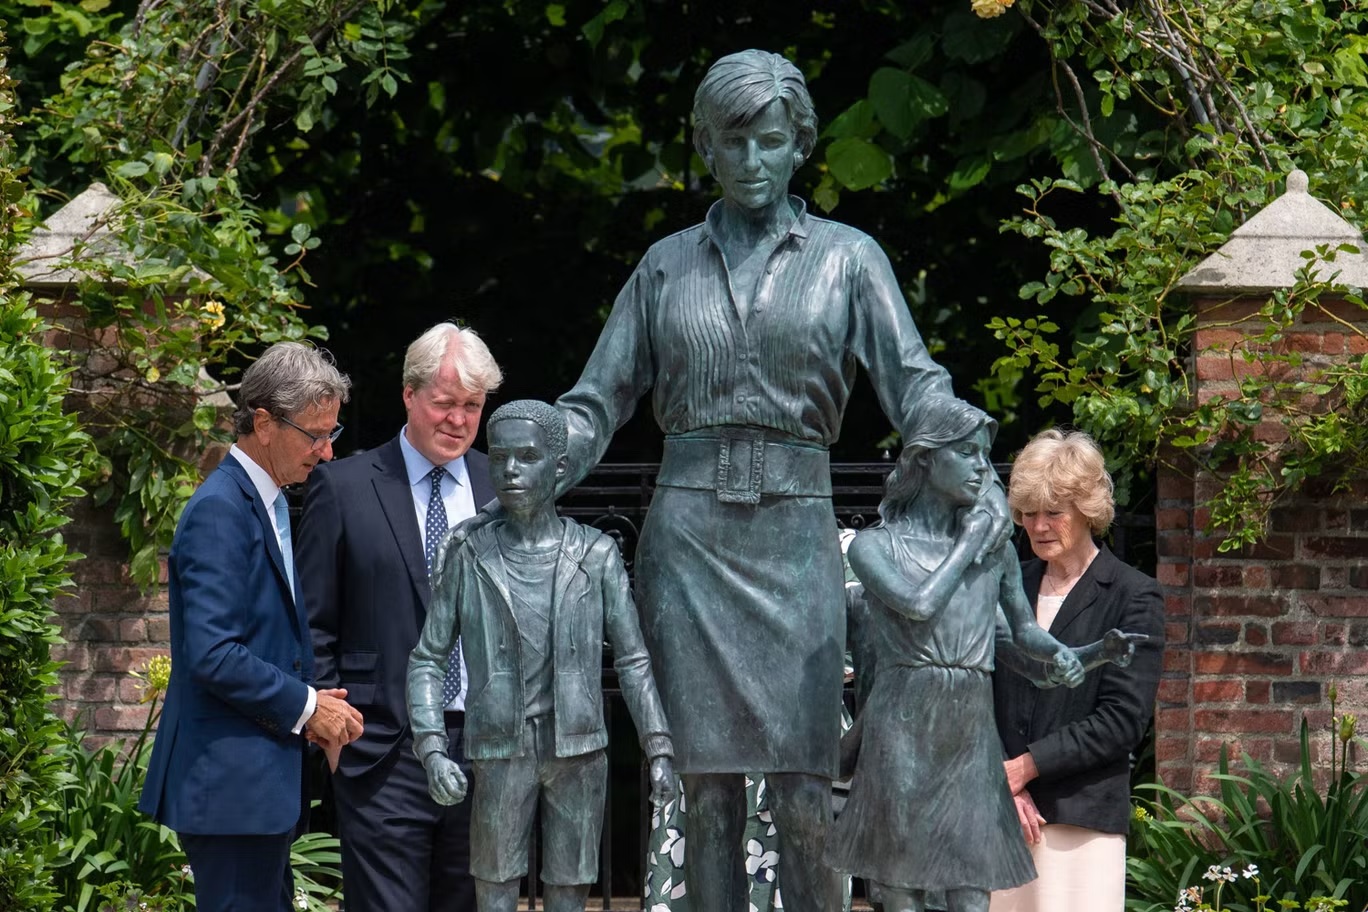 الإيرل وقف إلى جانب الأميرين عندما أزاحا الستار عن تمثال والدتهما في "قصر كنسينغتون" في يوليو 2021، واصفاً الحدث بأنه "يوم جيد" (أ ف ب/ غيتي)